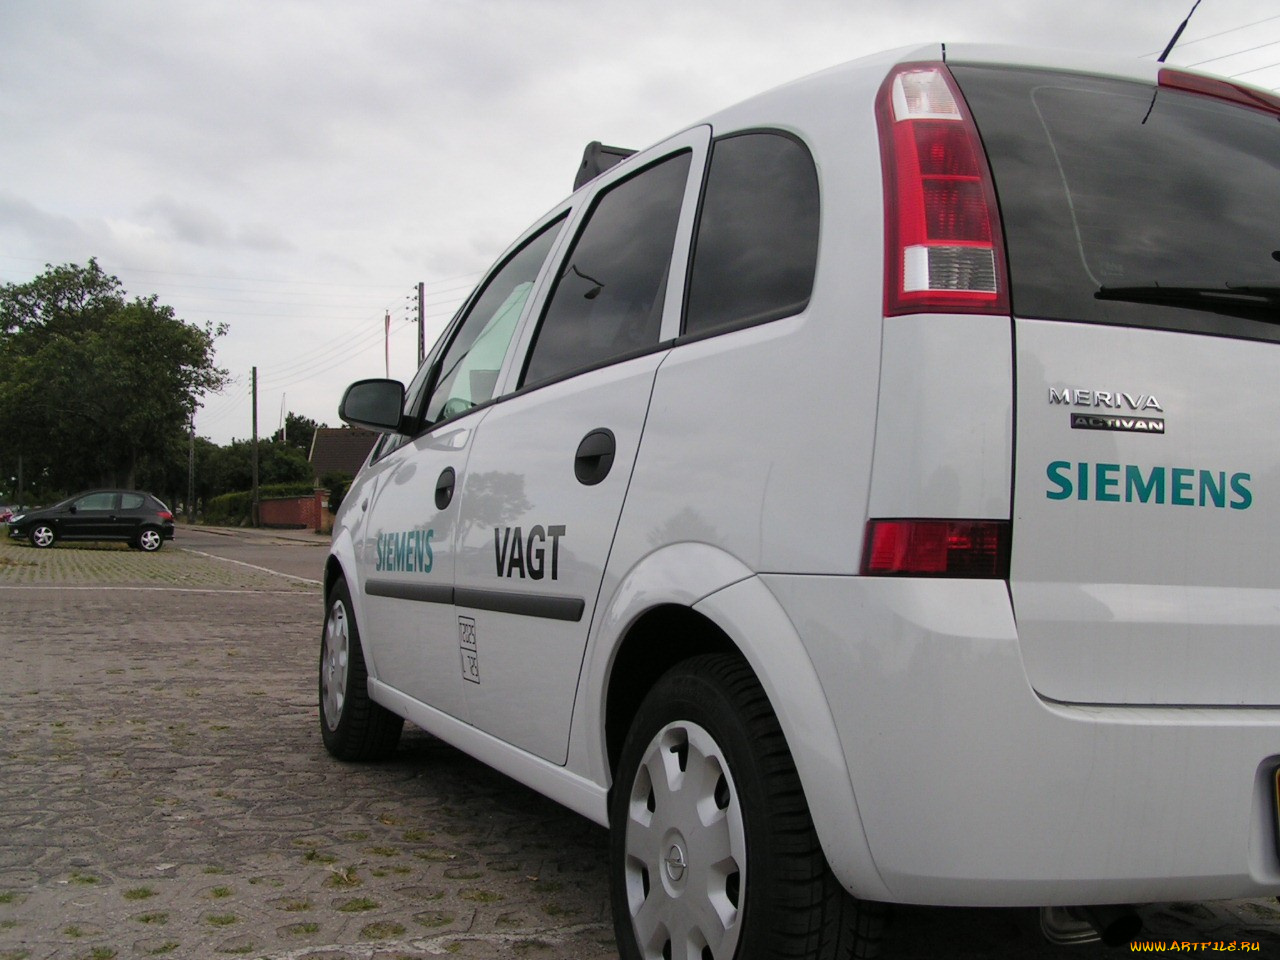 Авто с брендом Siemens